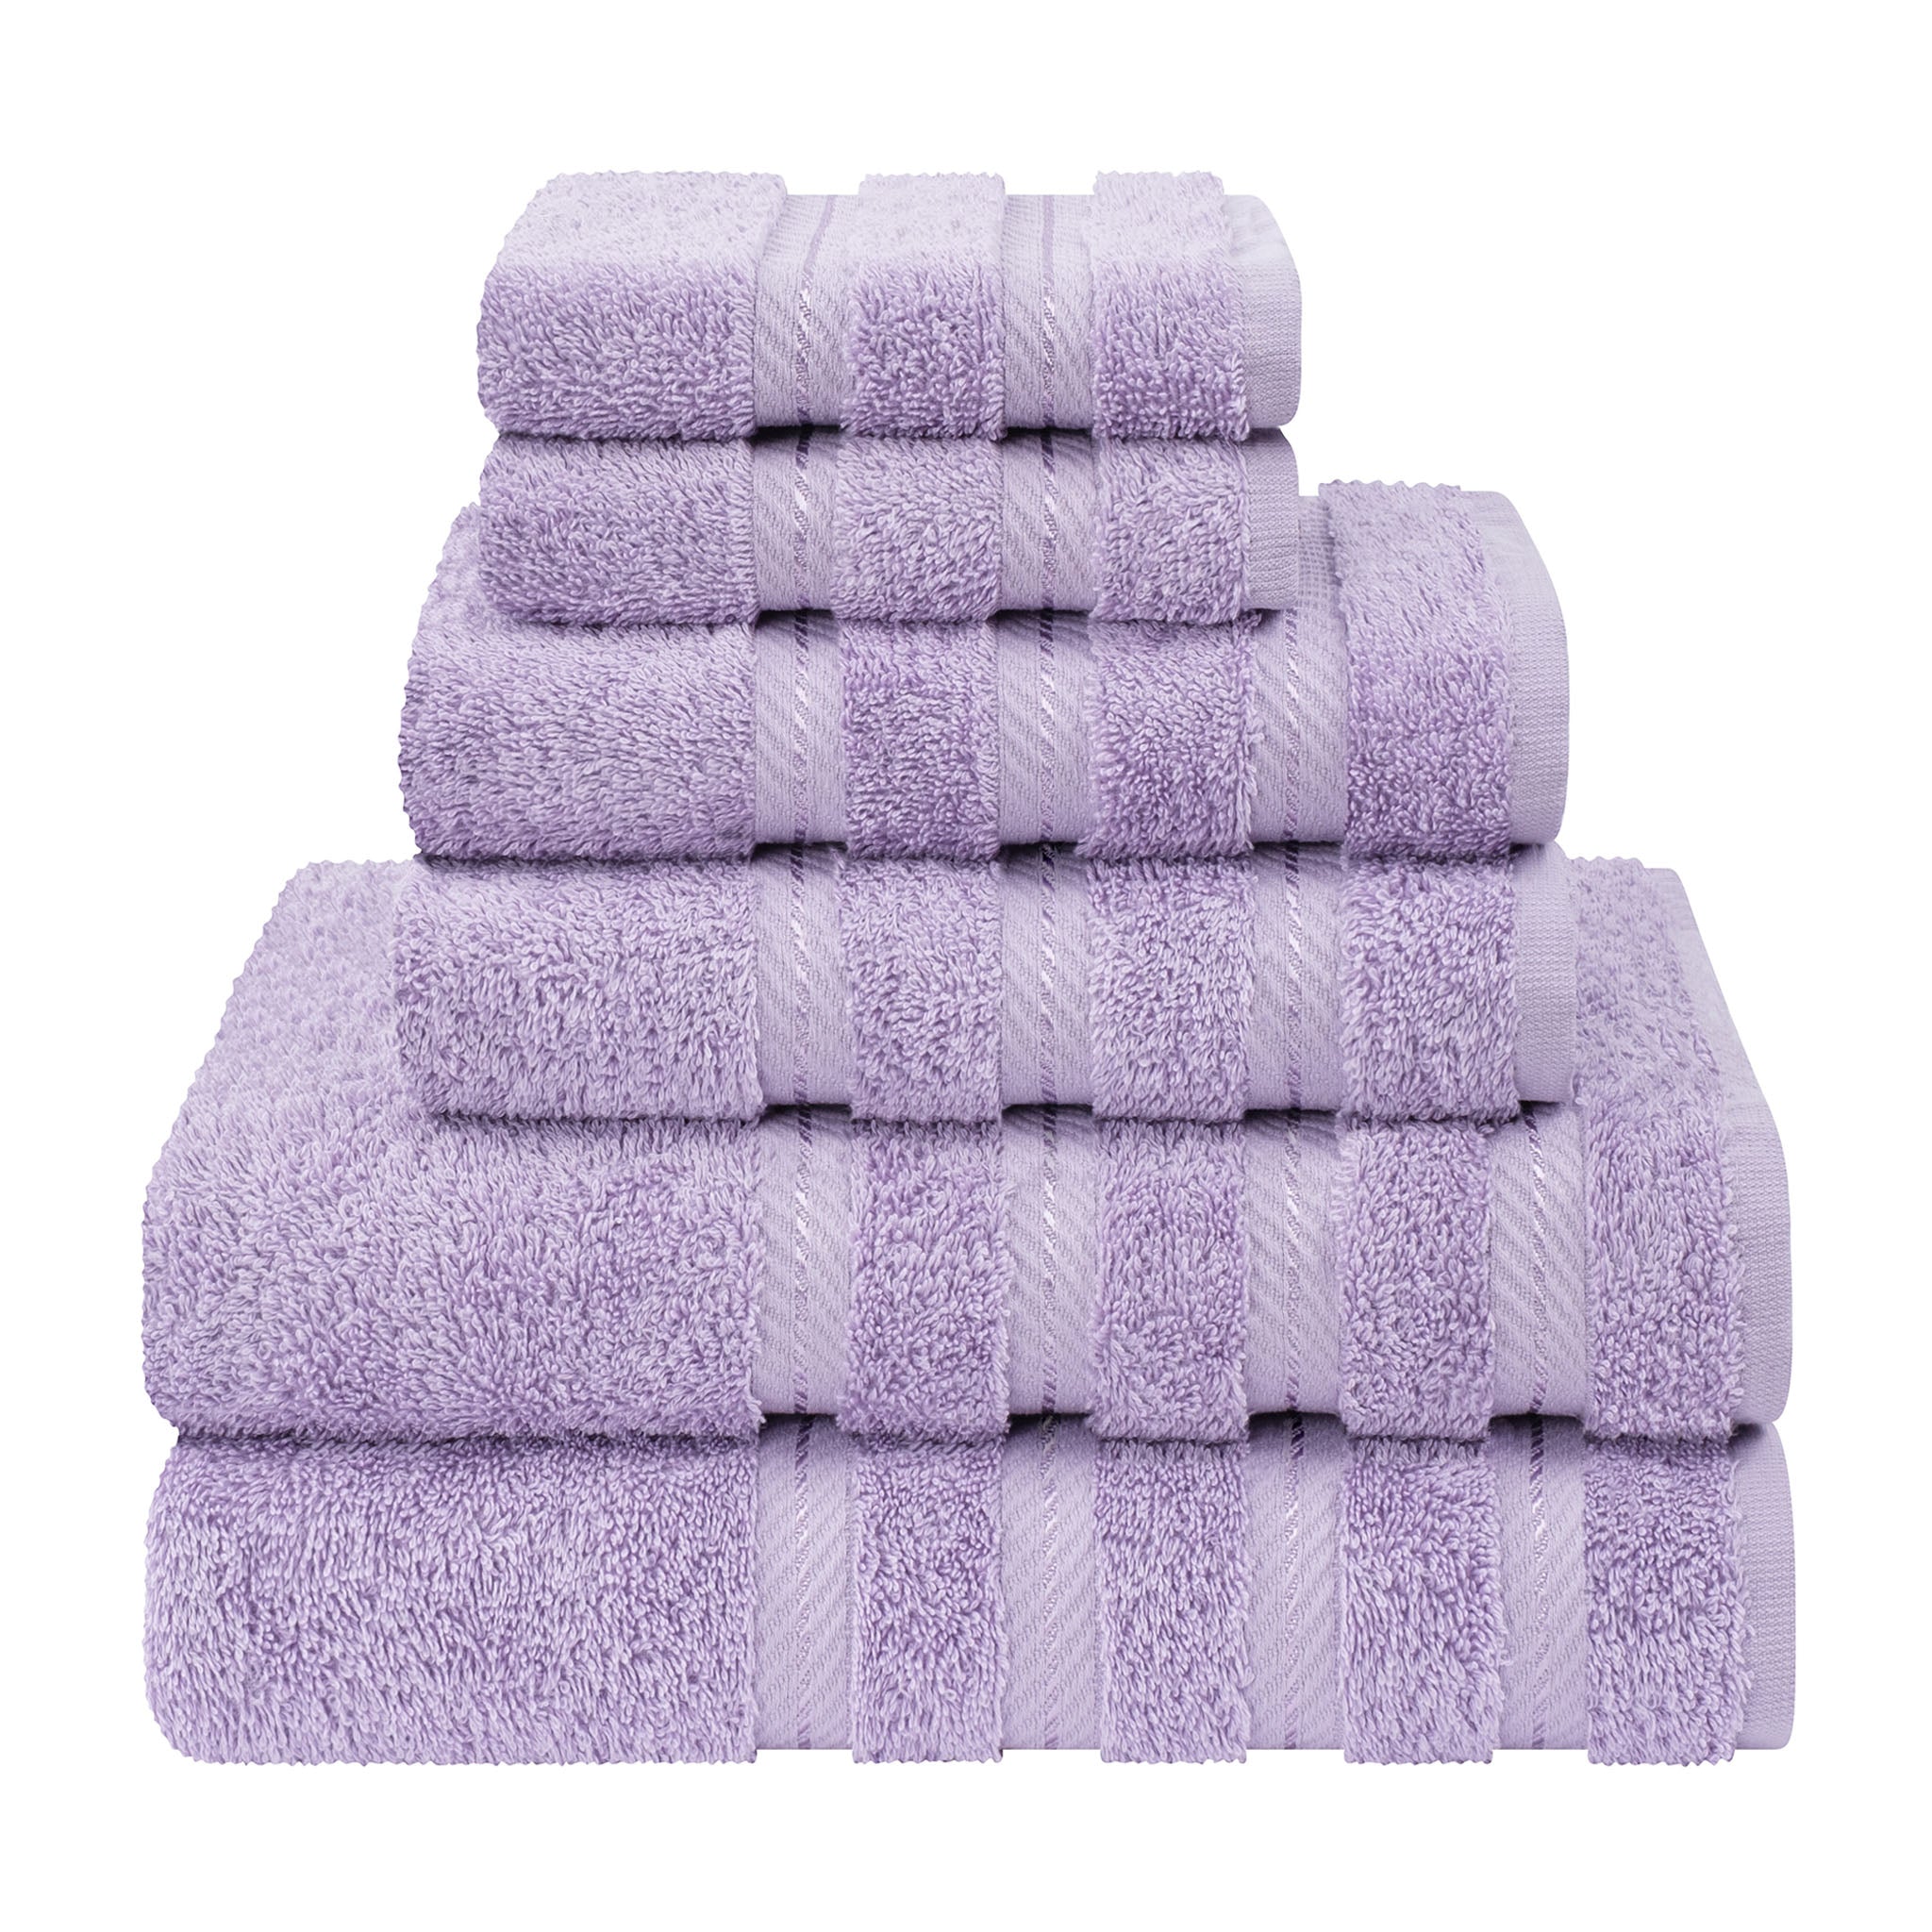 American Soft Linen 100% Turkish Cotton 6 Piece Towel Set Wholesale lilac-1